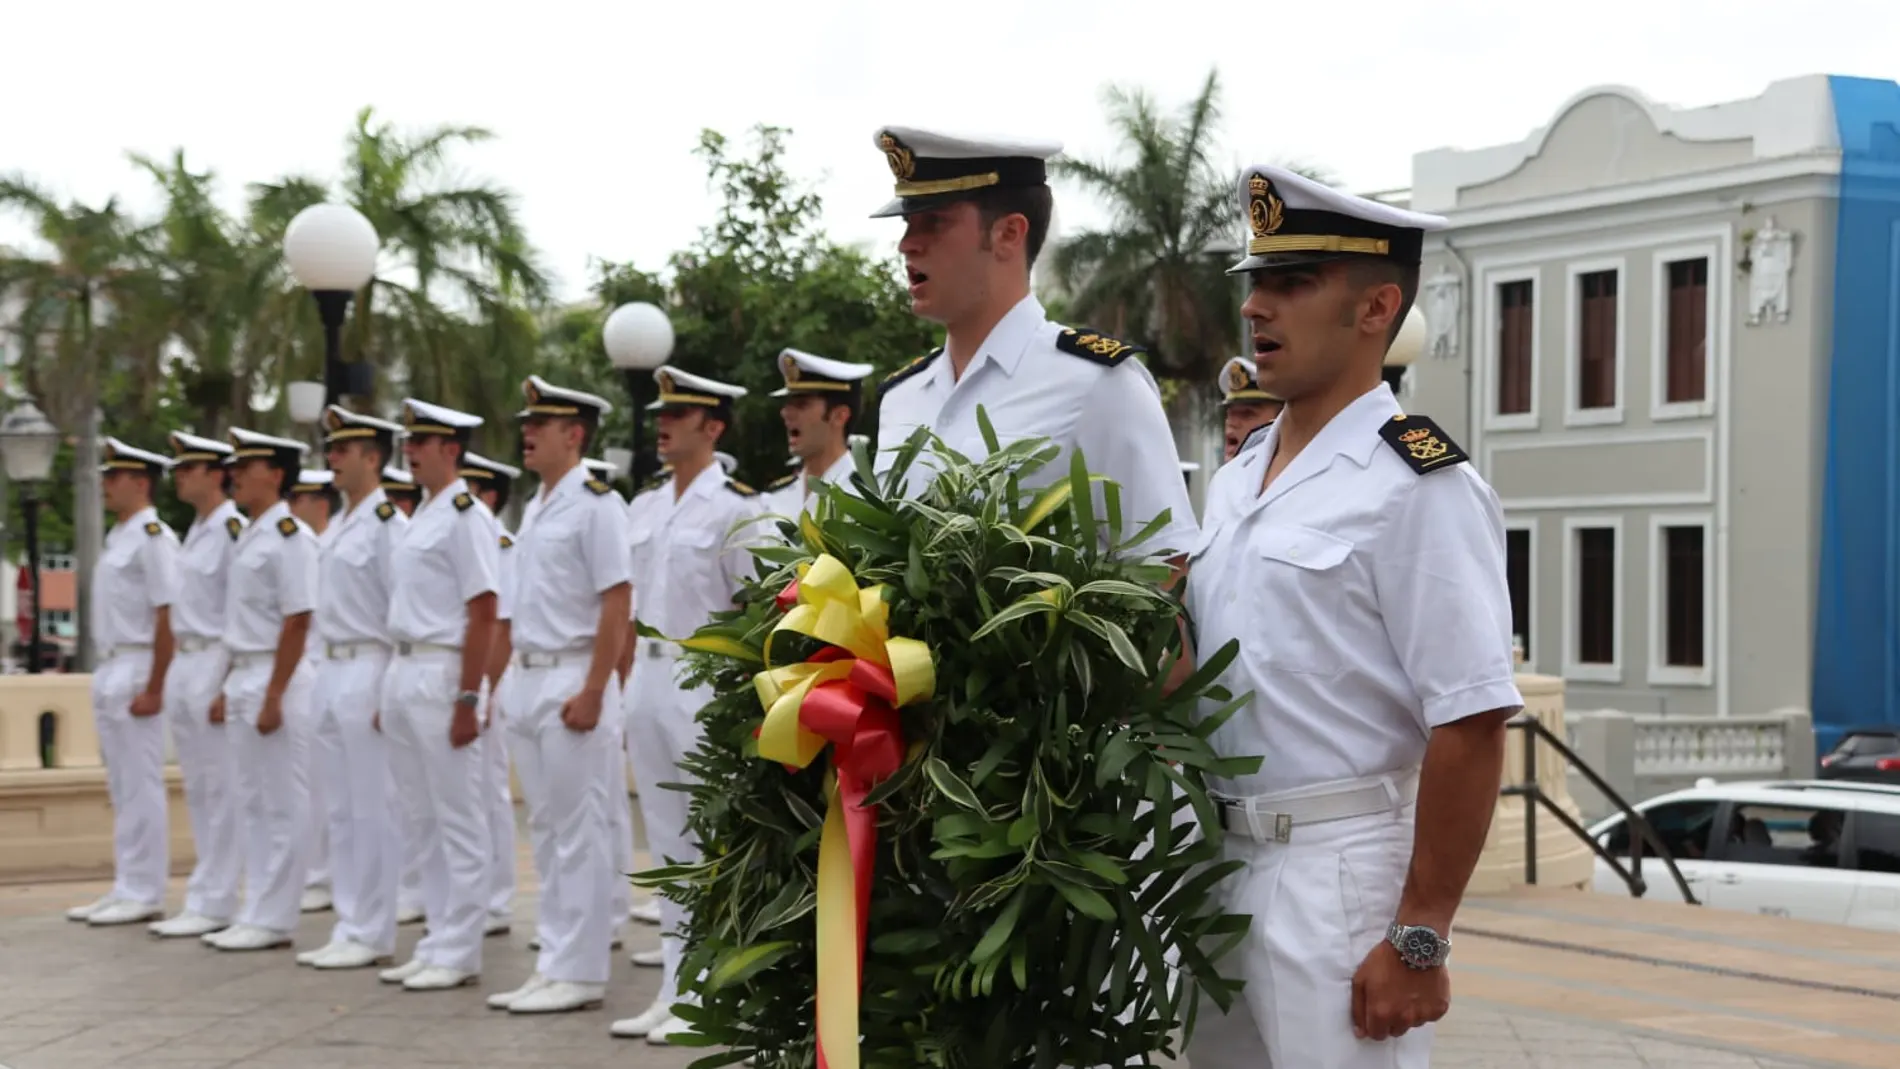 Homenaje de Elcano al primer almirante de la mar Océana en Puerto Rico